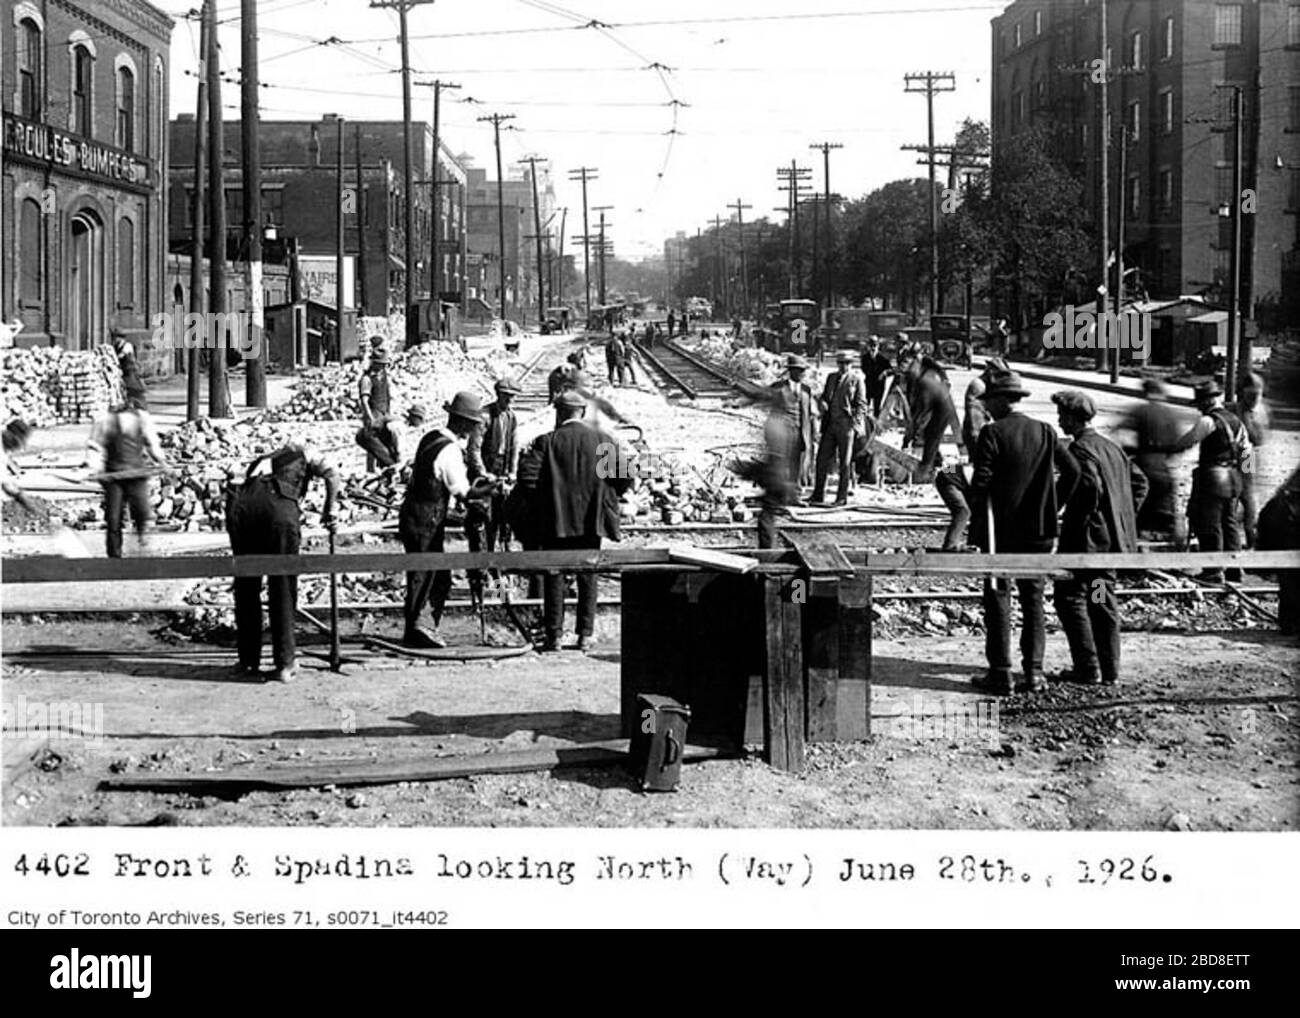 440 Front & Spadina mirando hacia el norte (Way) 28 de junio de 1926. City  of Toronto Archives Series 71, s0071 it4402; 13 de julio de 1926;  http://www.trainweb.org/oldtimetrains/Toronto/streets/front spadina.htm;  Autor desconocido; '